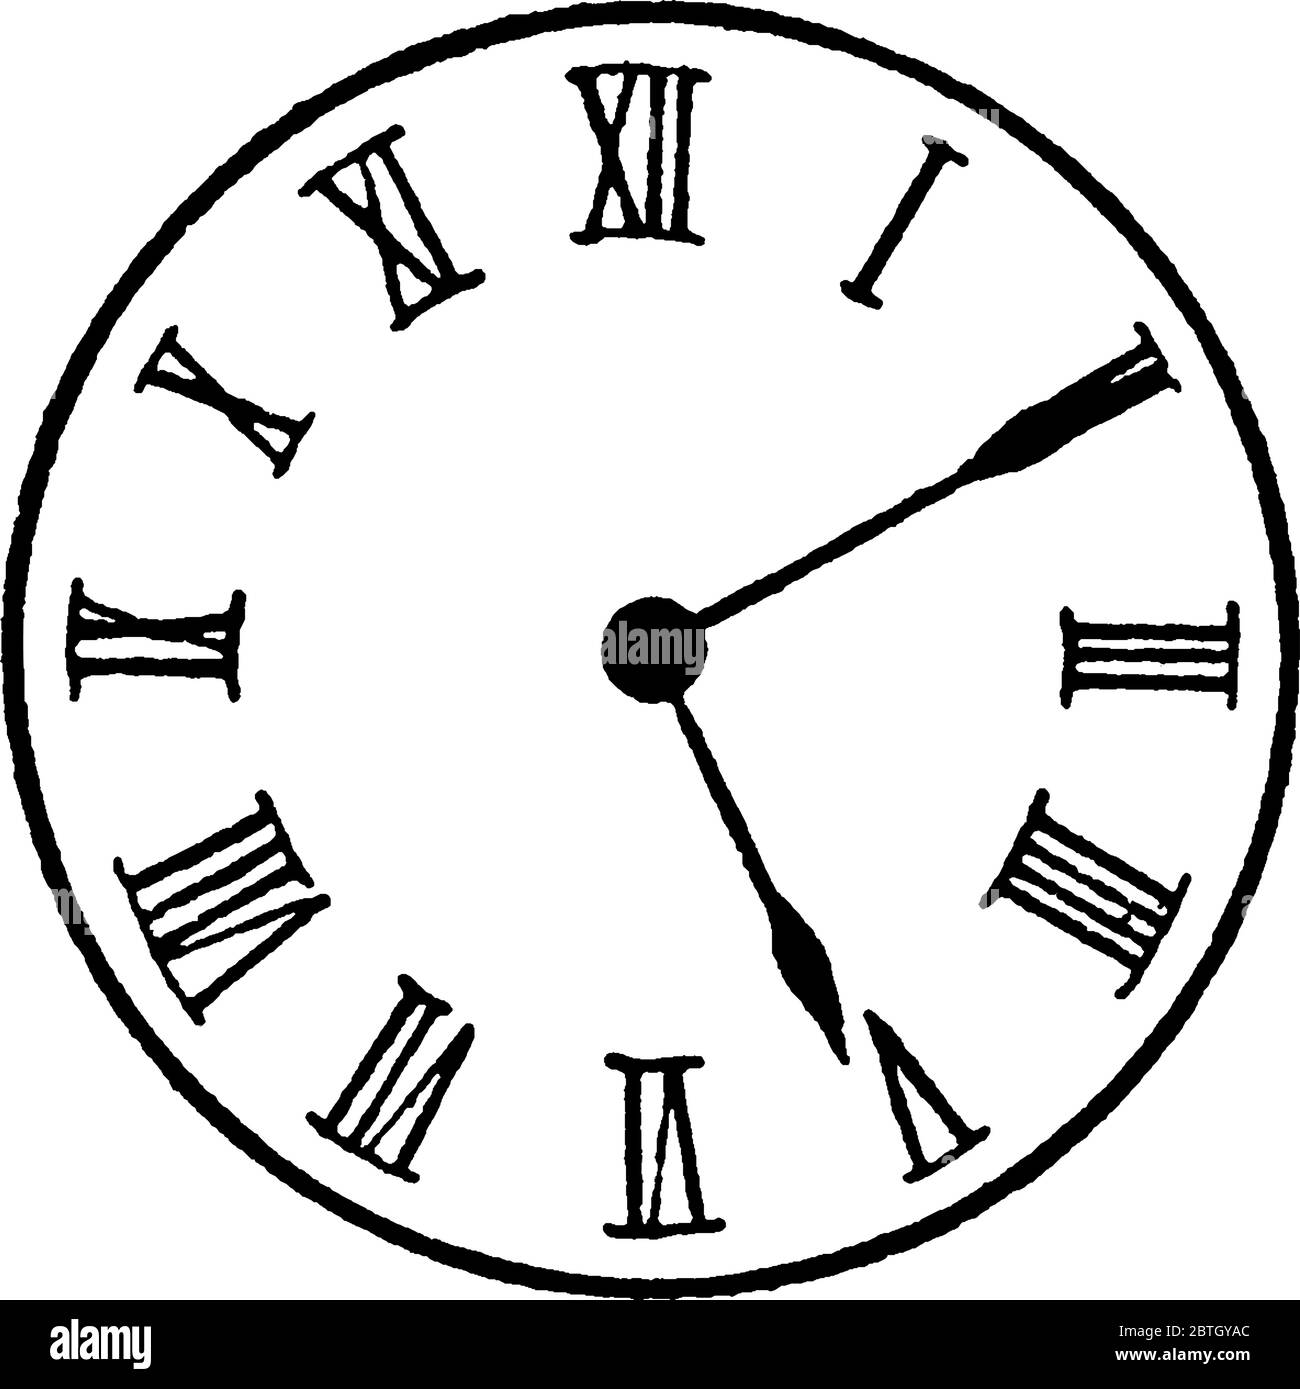 Figura che mostra l'orologio analogico con numeri romani, e sono dieci  ultimi cinque sull'orologio, disegno di linee vintage o illustrazione di  incisione Immagine e Vettoriale - Alamy